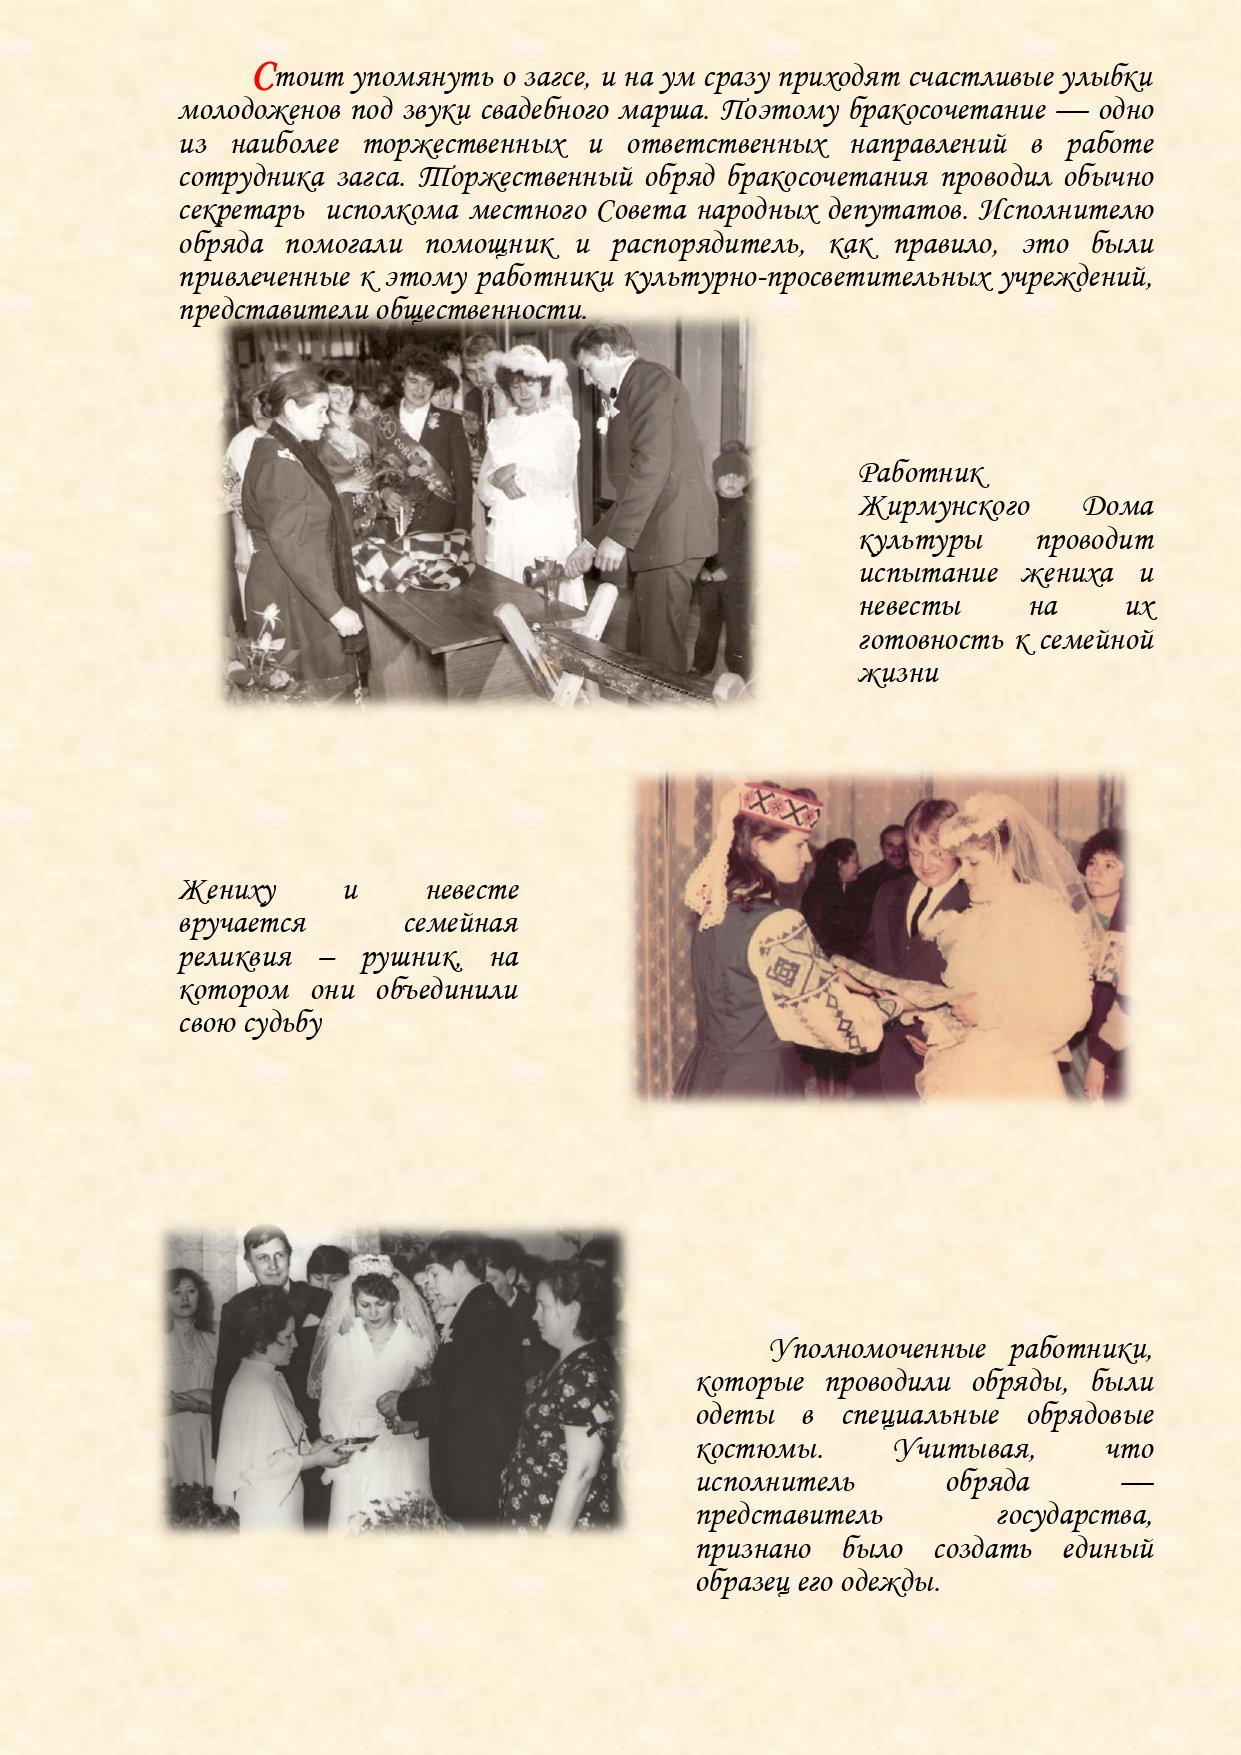 История органов загса Вороновского района с изменениями (1)_page-0016.jpg